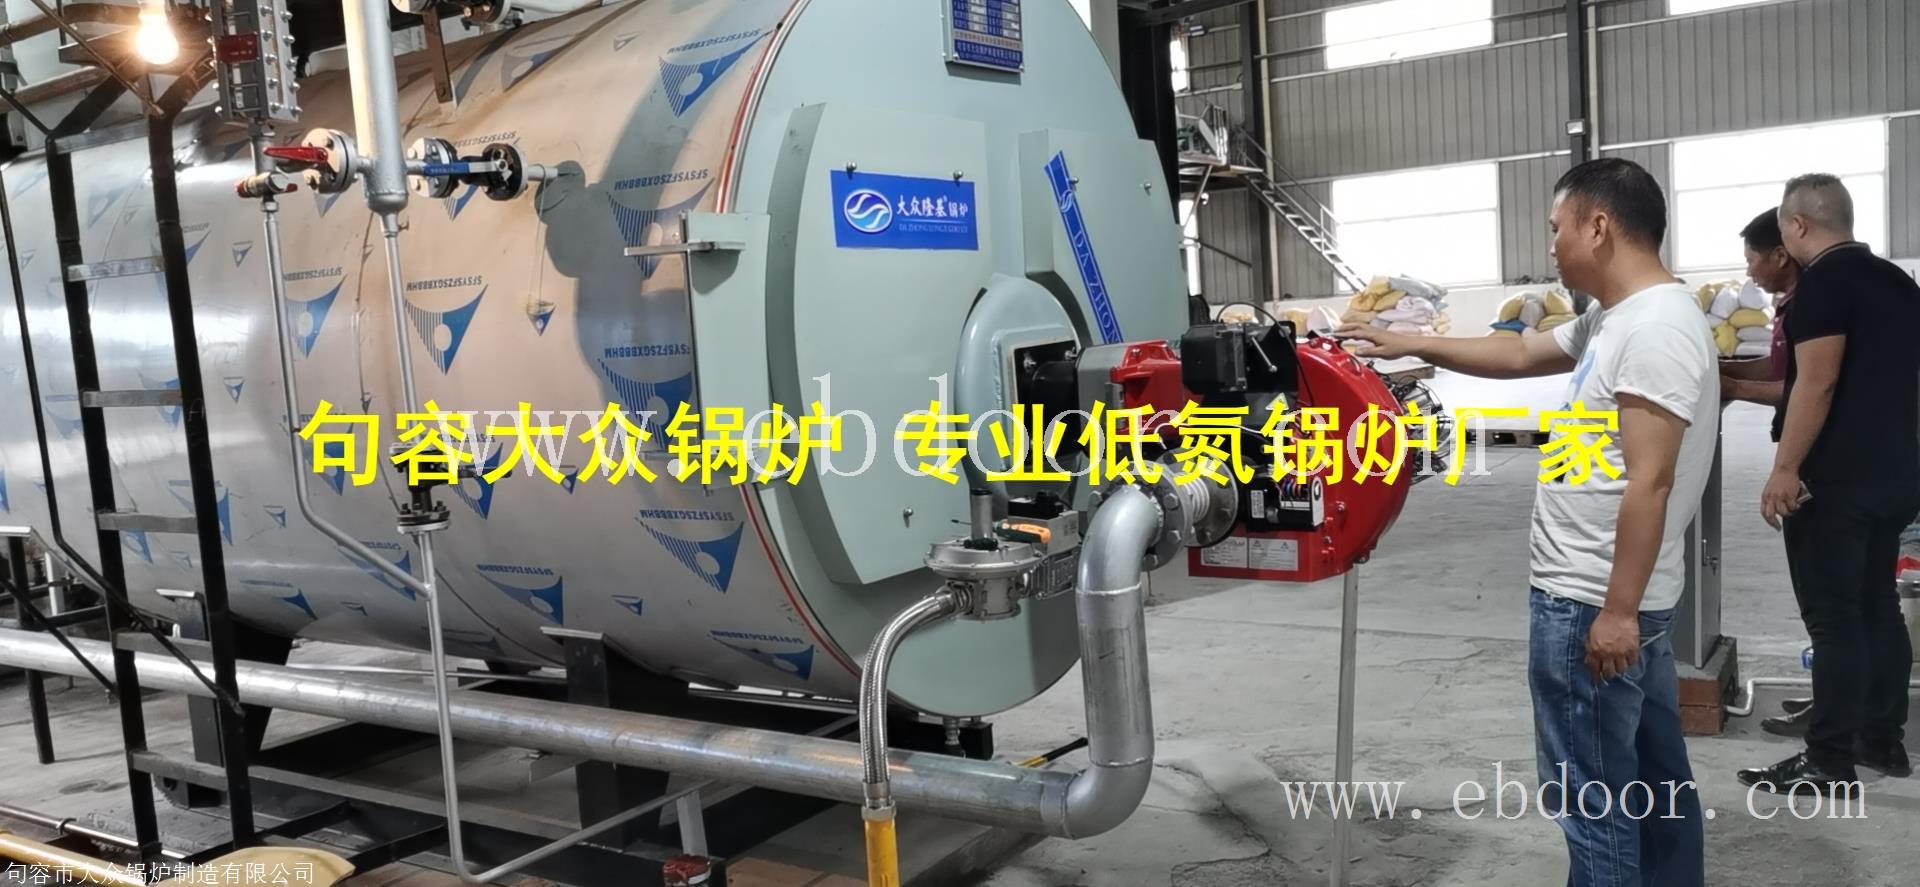 低氮锅炉的燃烧性能和使用方法江苏南通南京镇江低氮锅炉厂家2